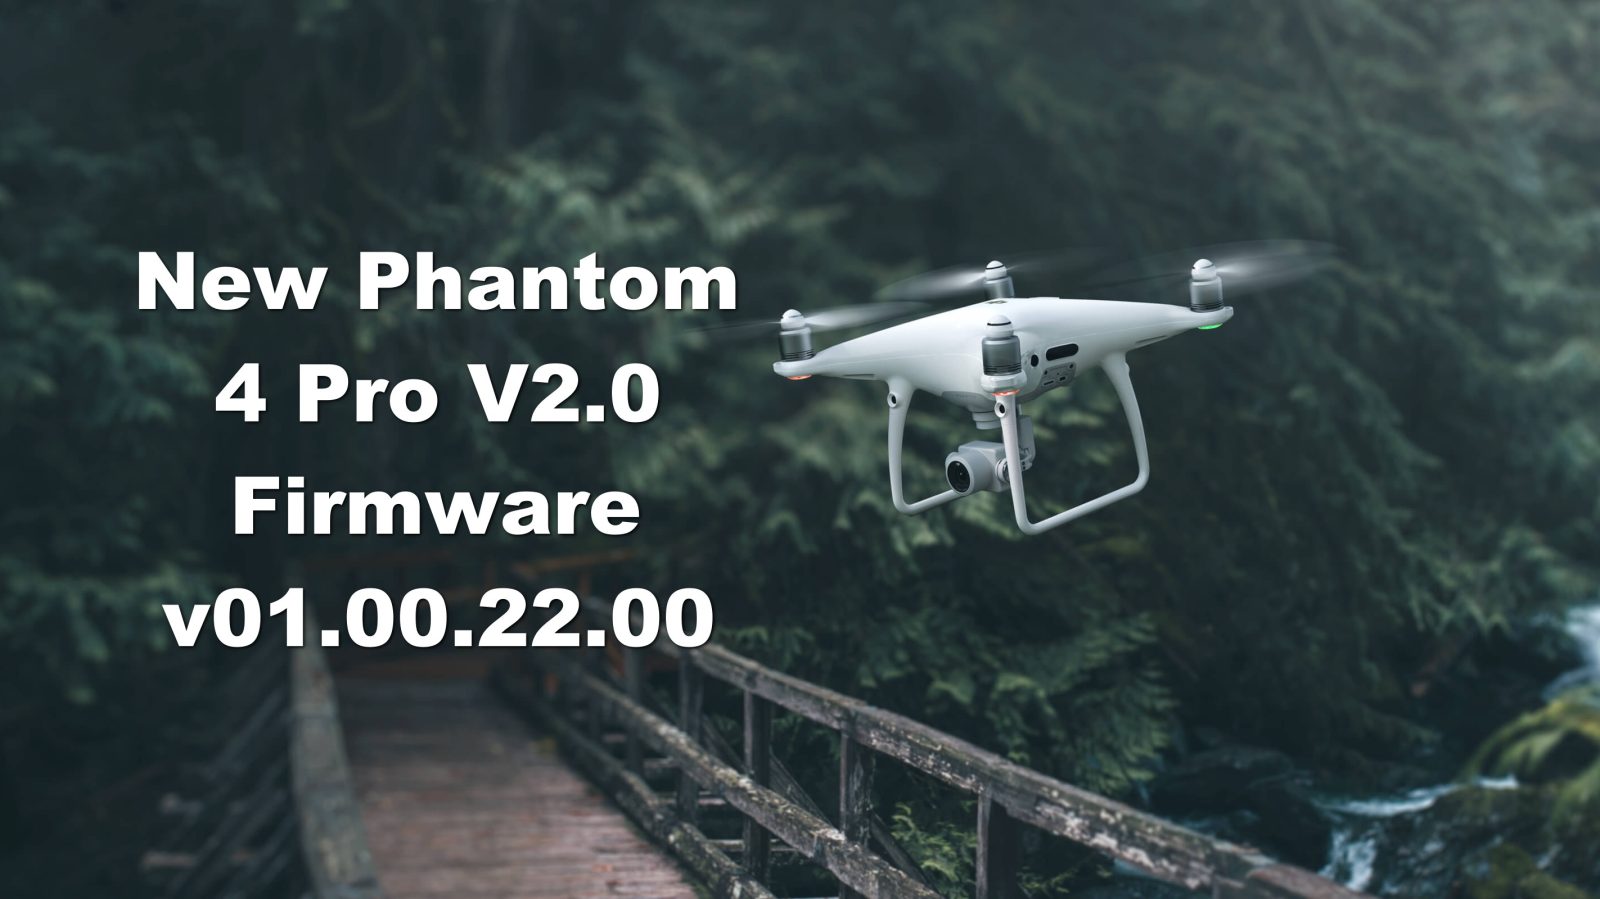 New Phantom 4 Pro V2.0 Firmware Released - v01.00.22.00